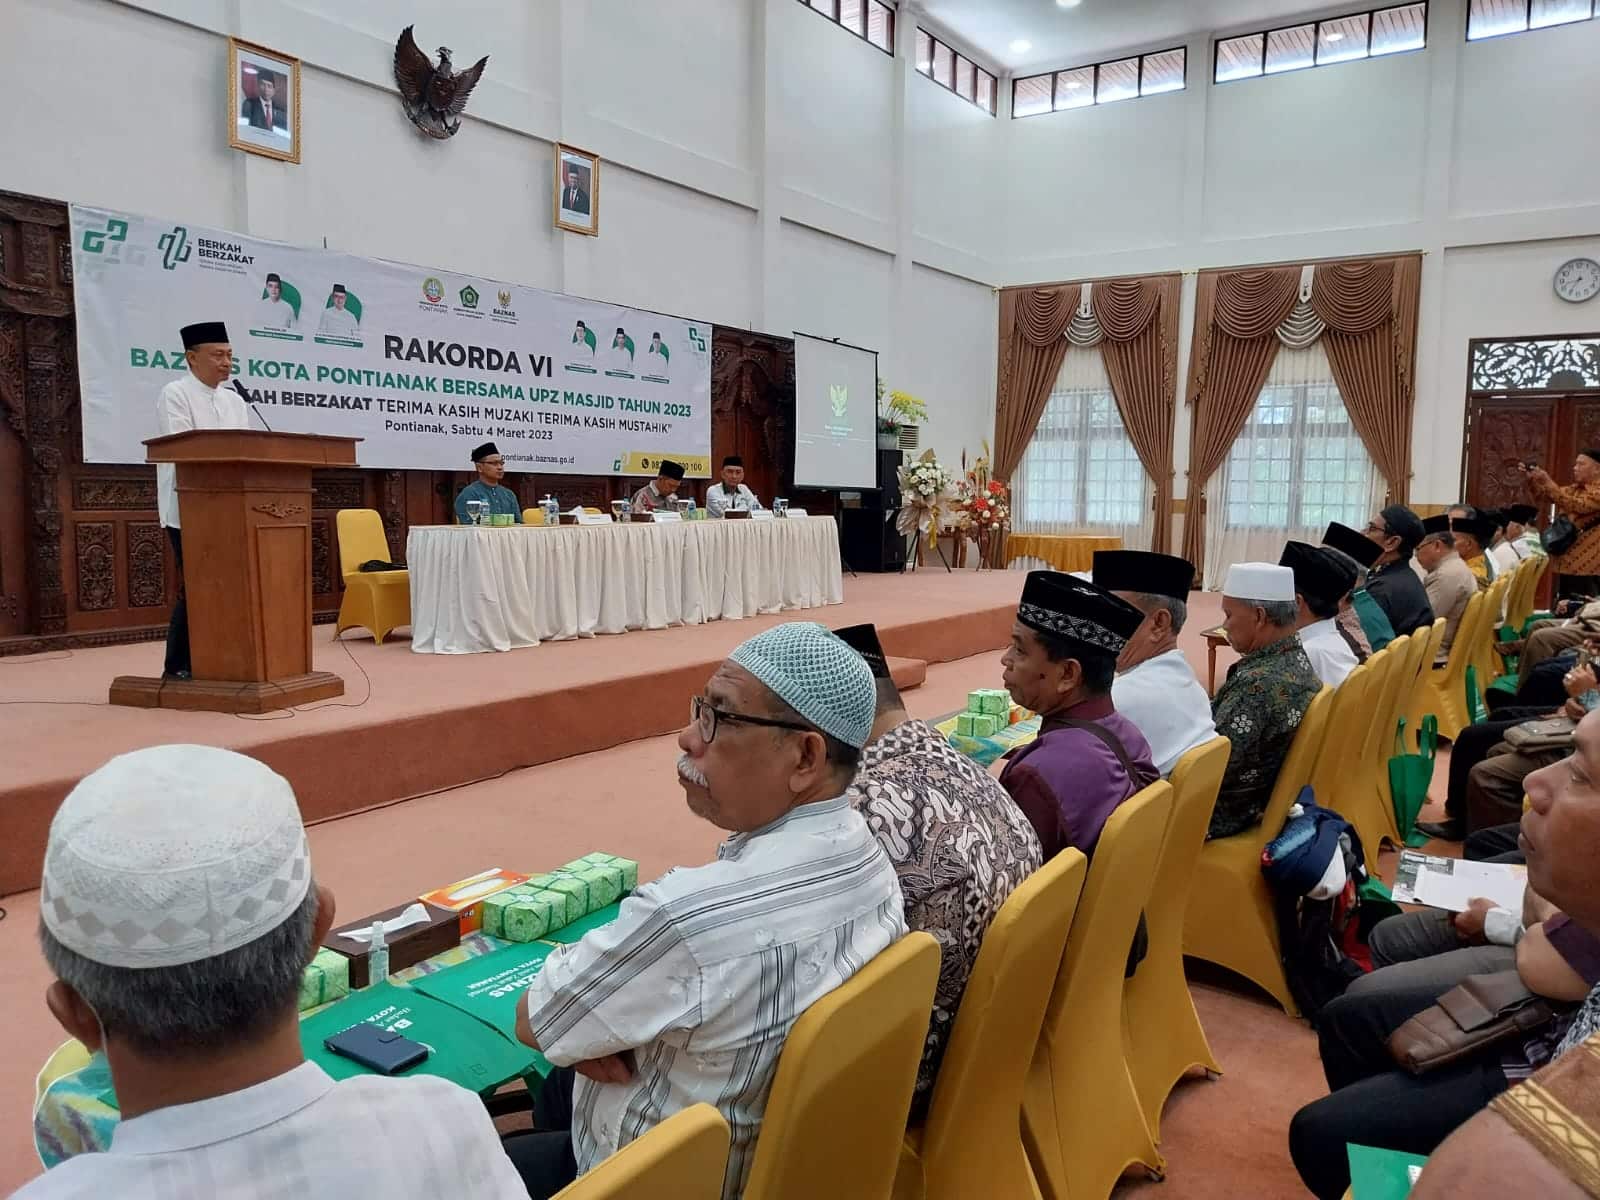 Wali Kota Pontianak, Edi Rusdi Kamtono membuka Rakorda VI Baznas dan UPZ masjid dan surau se-Kota Pontianak. (Foto: Prokopim For KalbarOnline.com)